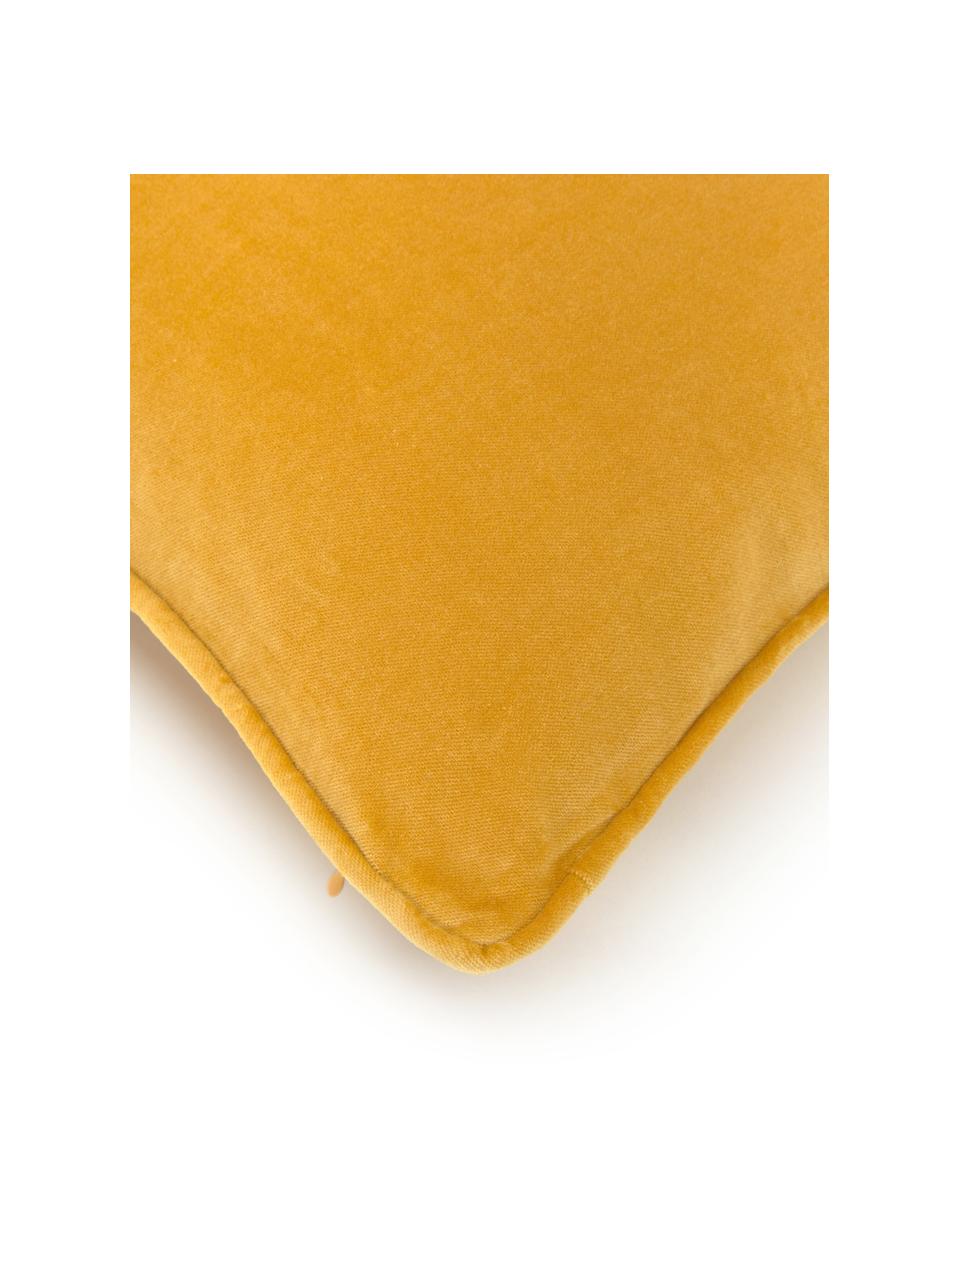 Funda de cojín de terciopelo Dana, 100% terciopelo de algodón, Amarillo ocre, An 30 x L 50 cm